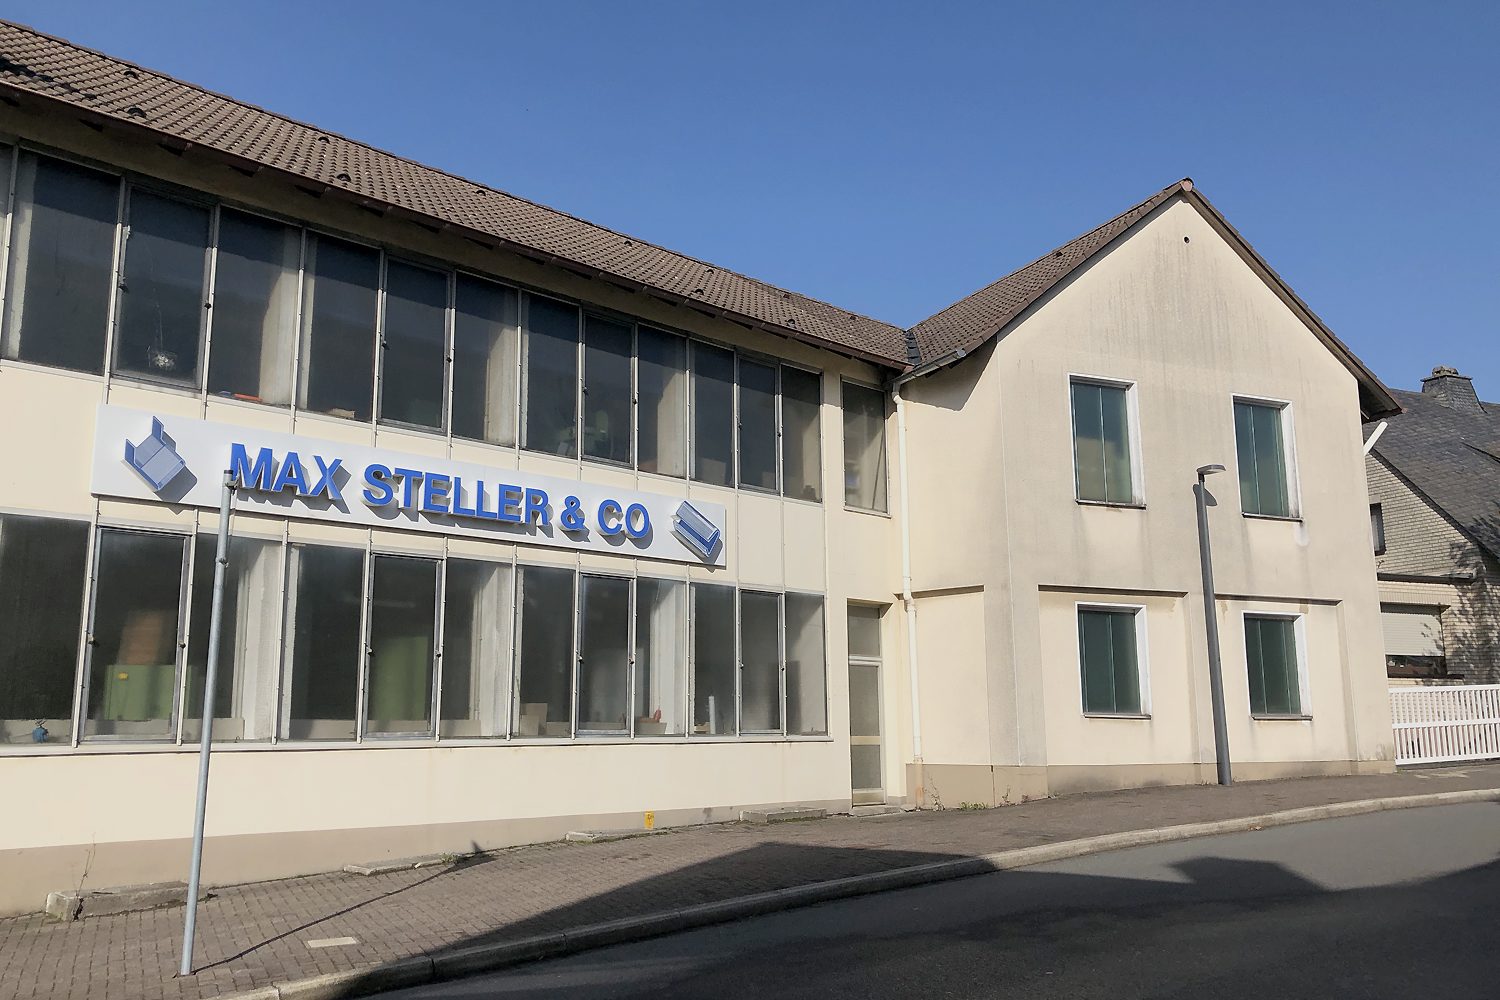 Außenansicht der Firma Max steller & Co. in Halver